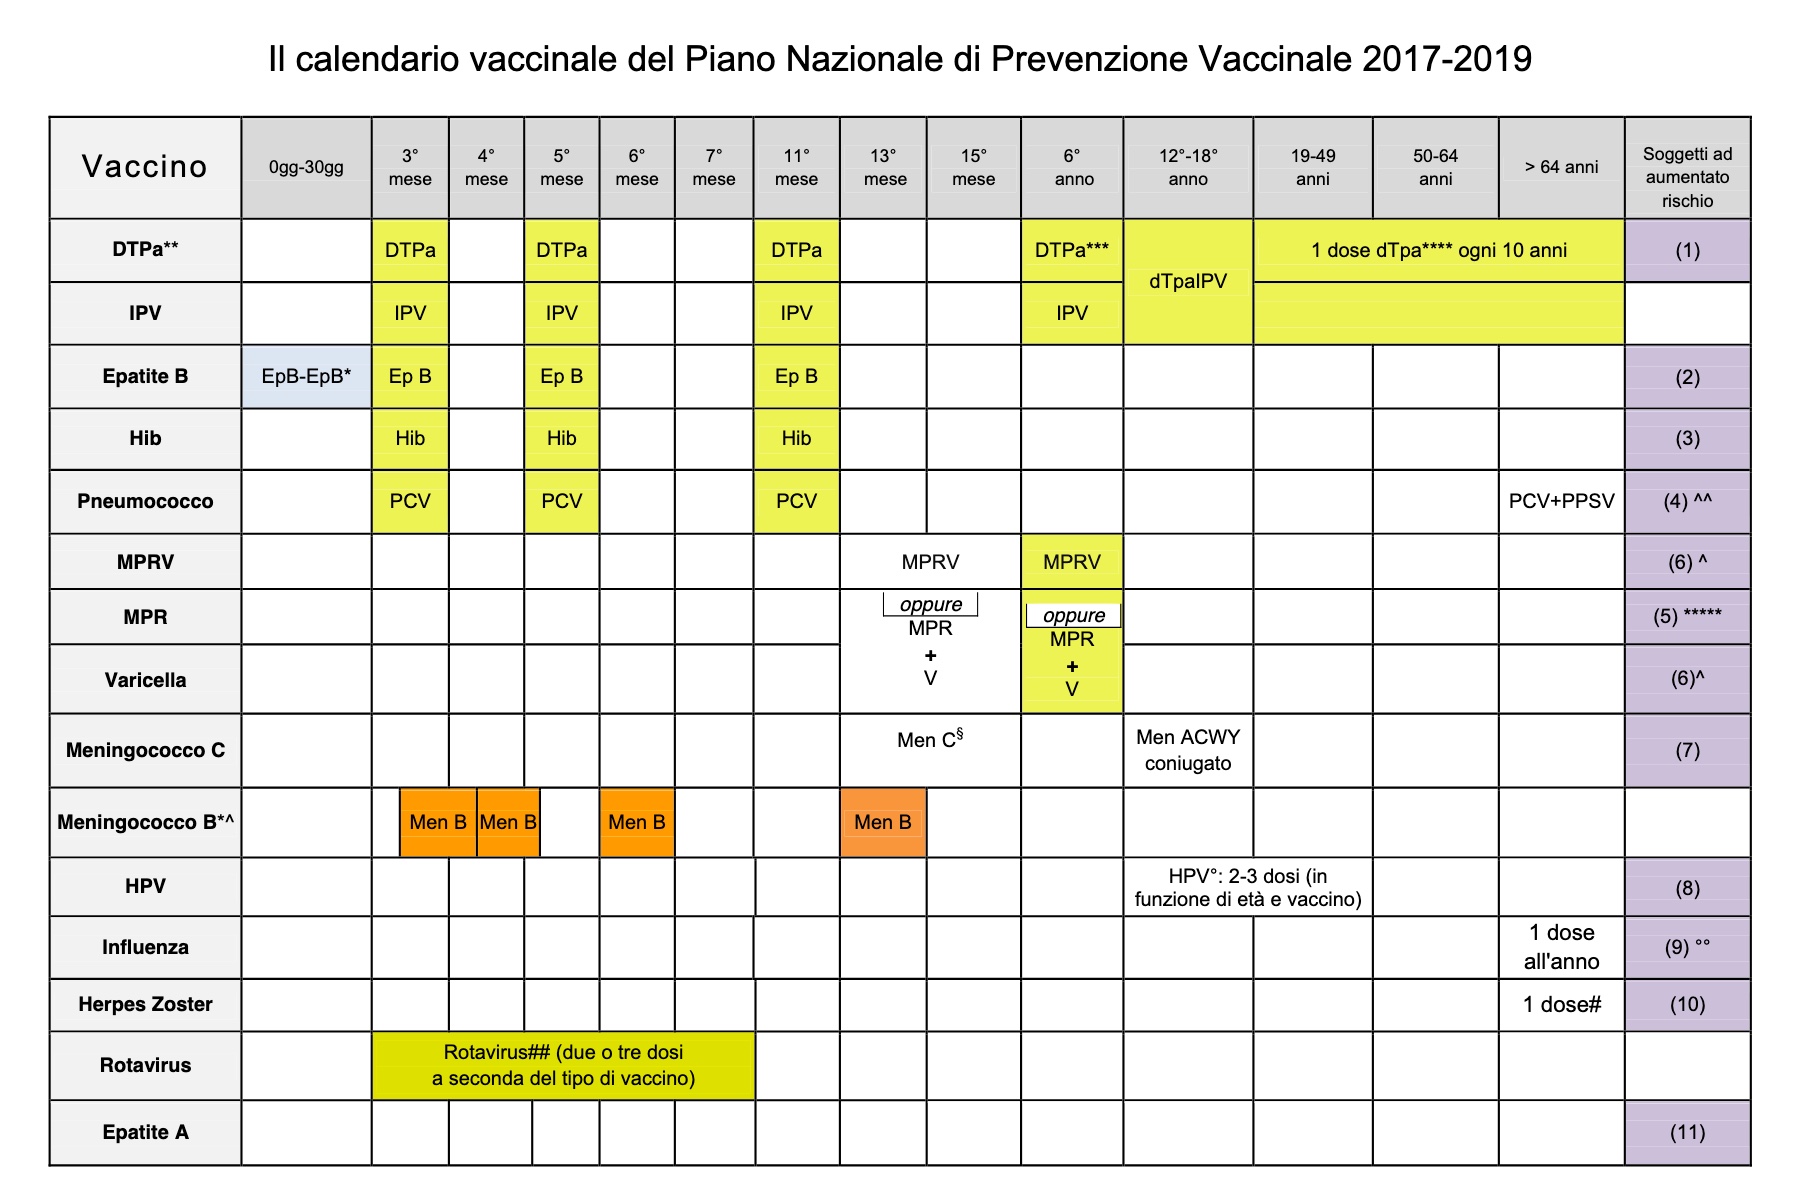 Схема прививок до года